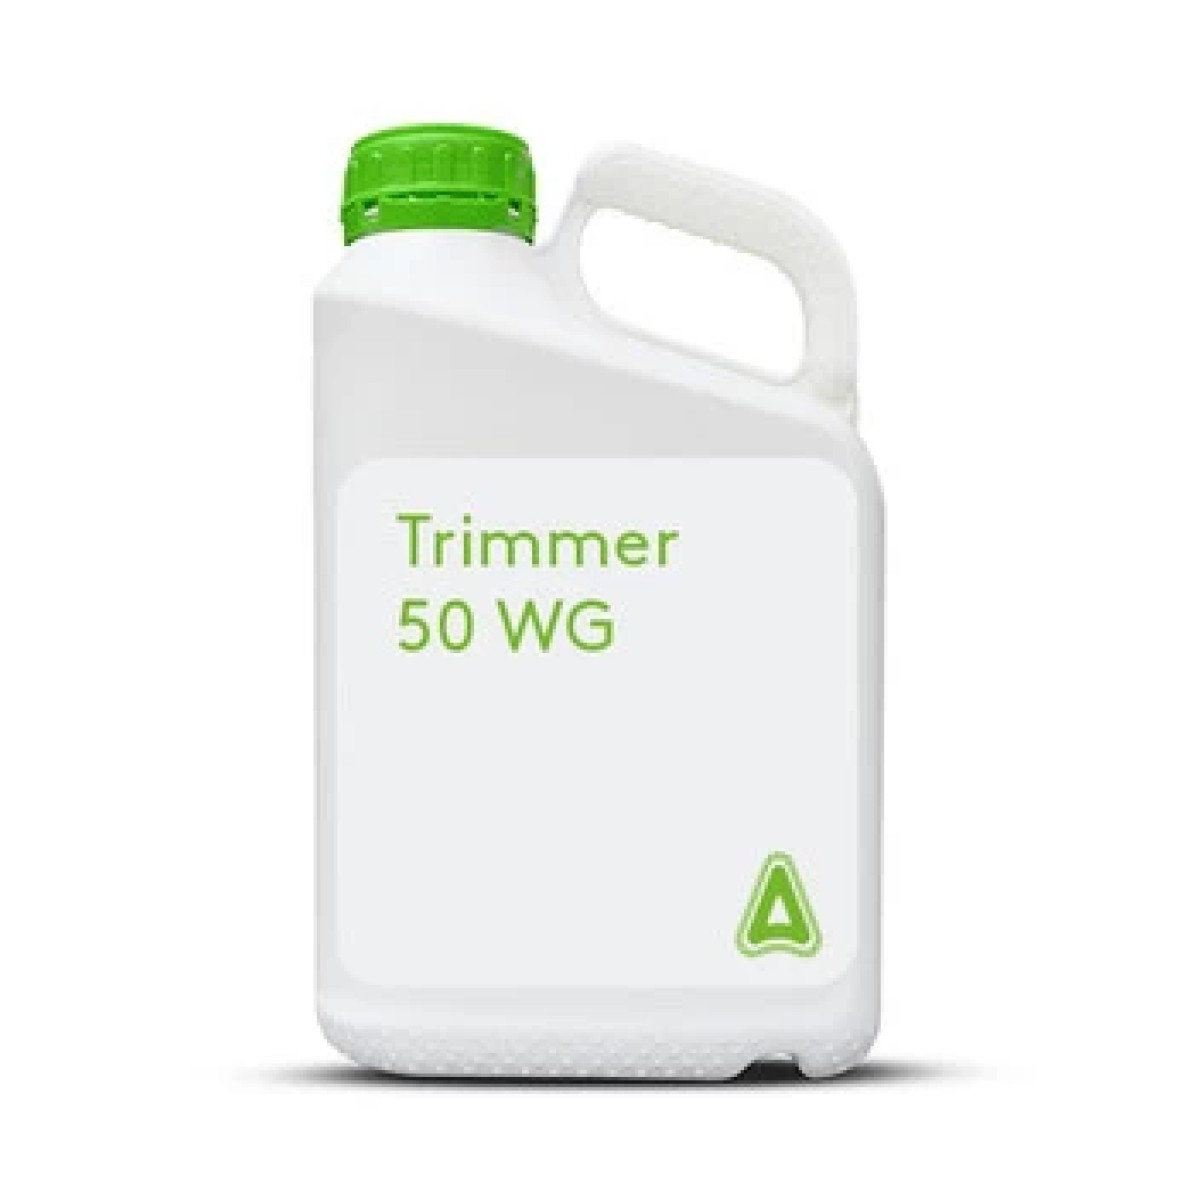 Trimmer 50 WG